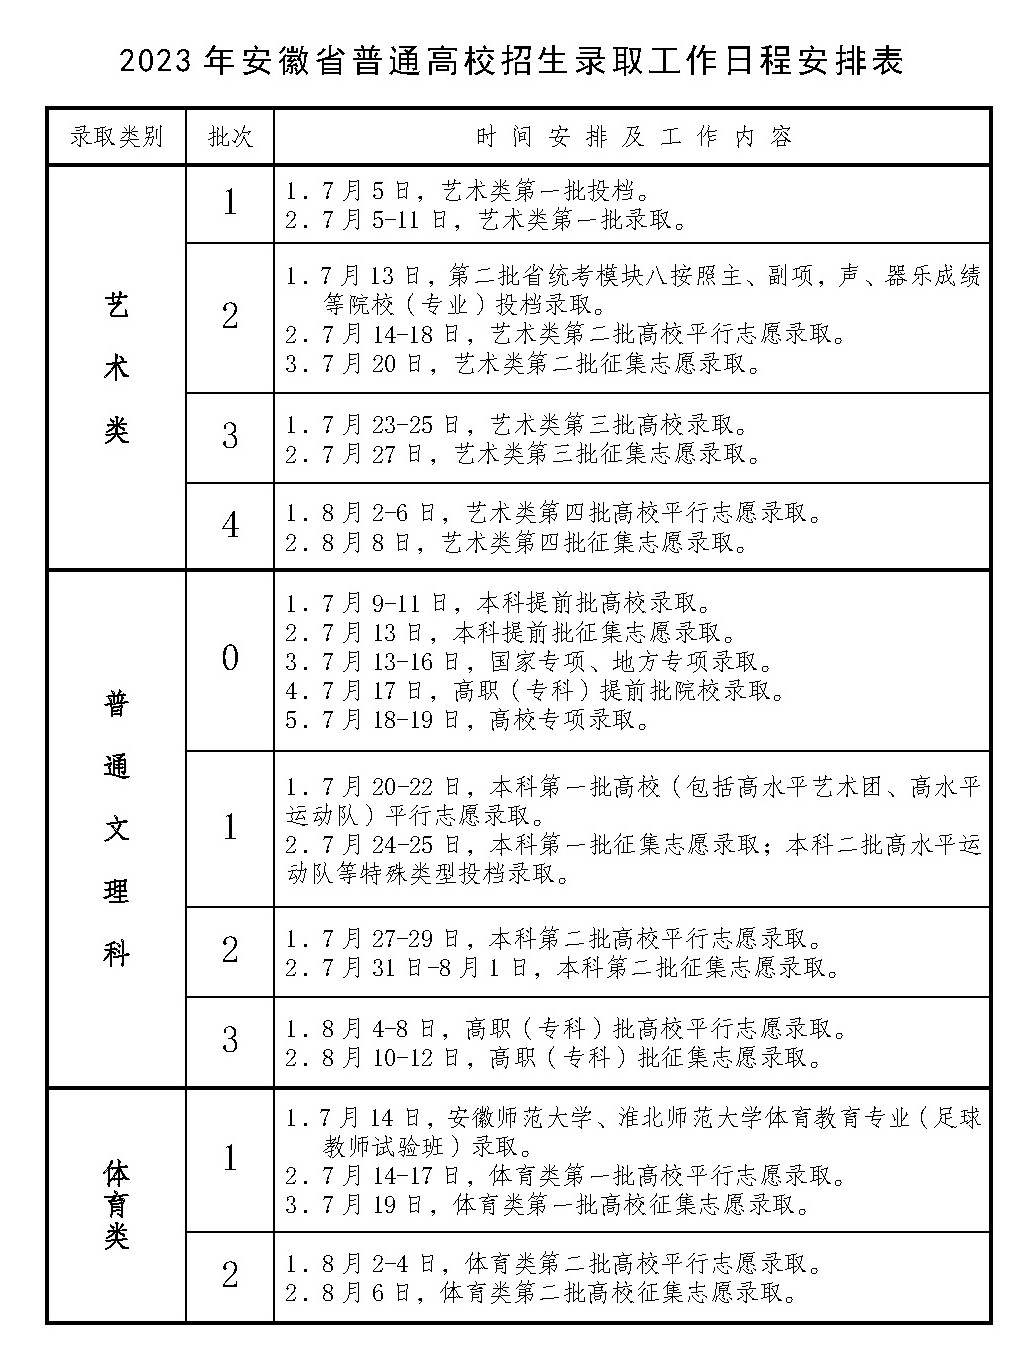 2023安徽高考录取时间安排表